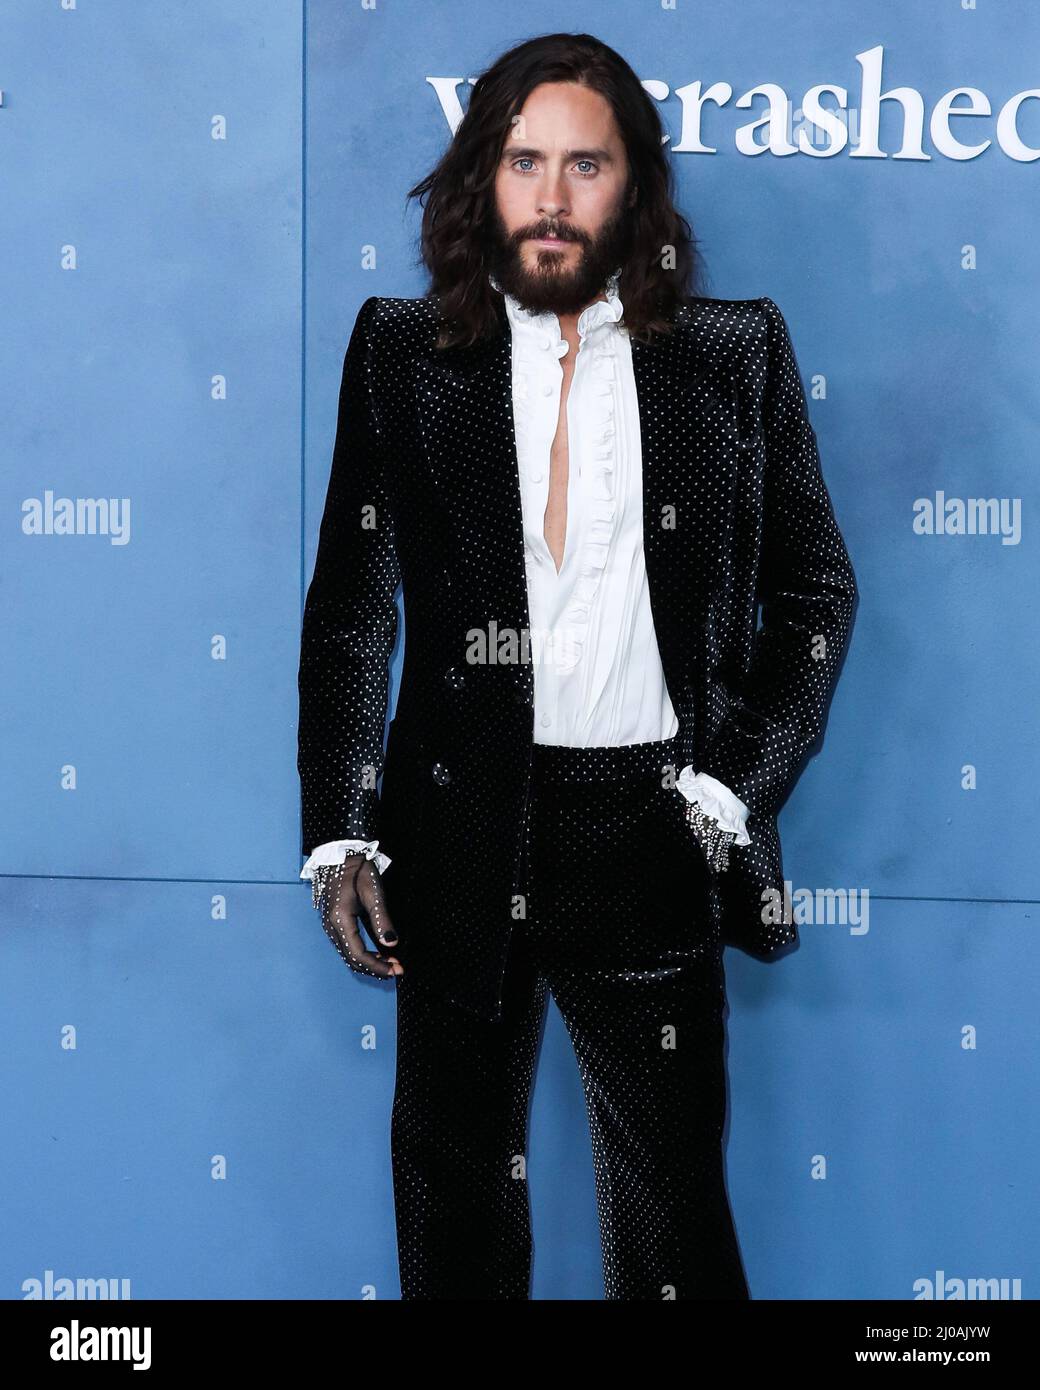 LOS ÁNGELES, CALIFORNIA, EE.UU. - 17 DE MARZO: El actor estadounidense Jared  Leto con un traje y guantes Gucci con tachuelas llega al estreno mundial de  'WeCrashed' de Apple TV, celebrado en